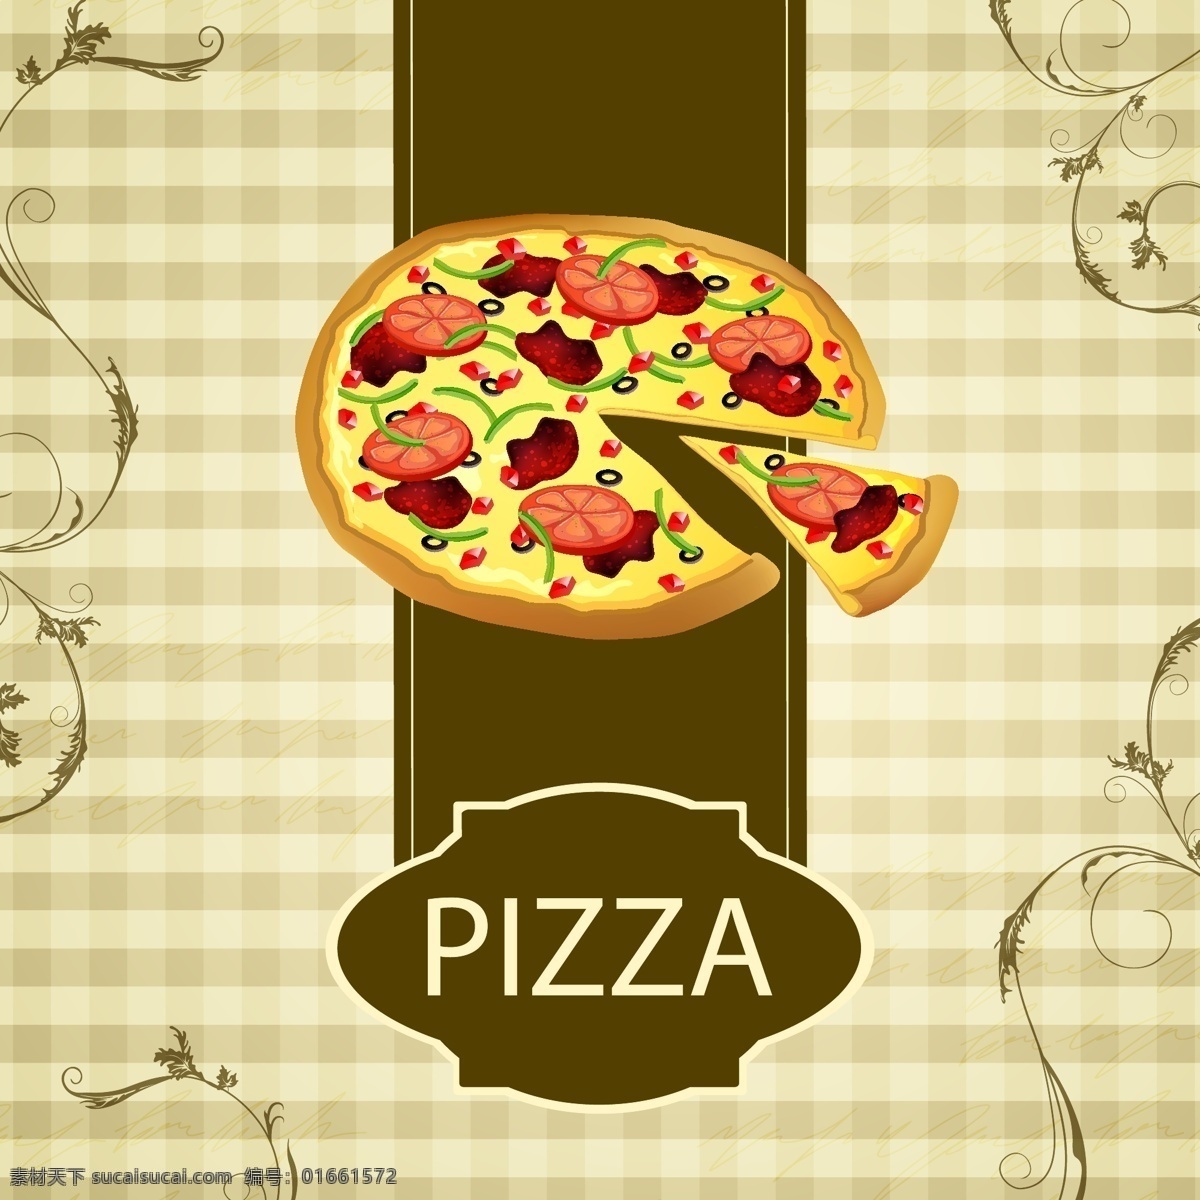 披萨 矢量 免费 菜单 底纹 分割 封面 复古 美食 模板 设计稿 素材元素 源文件 矢量图